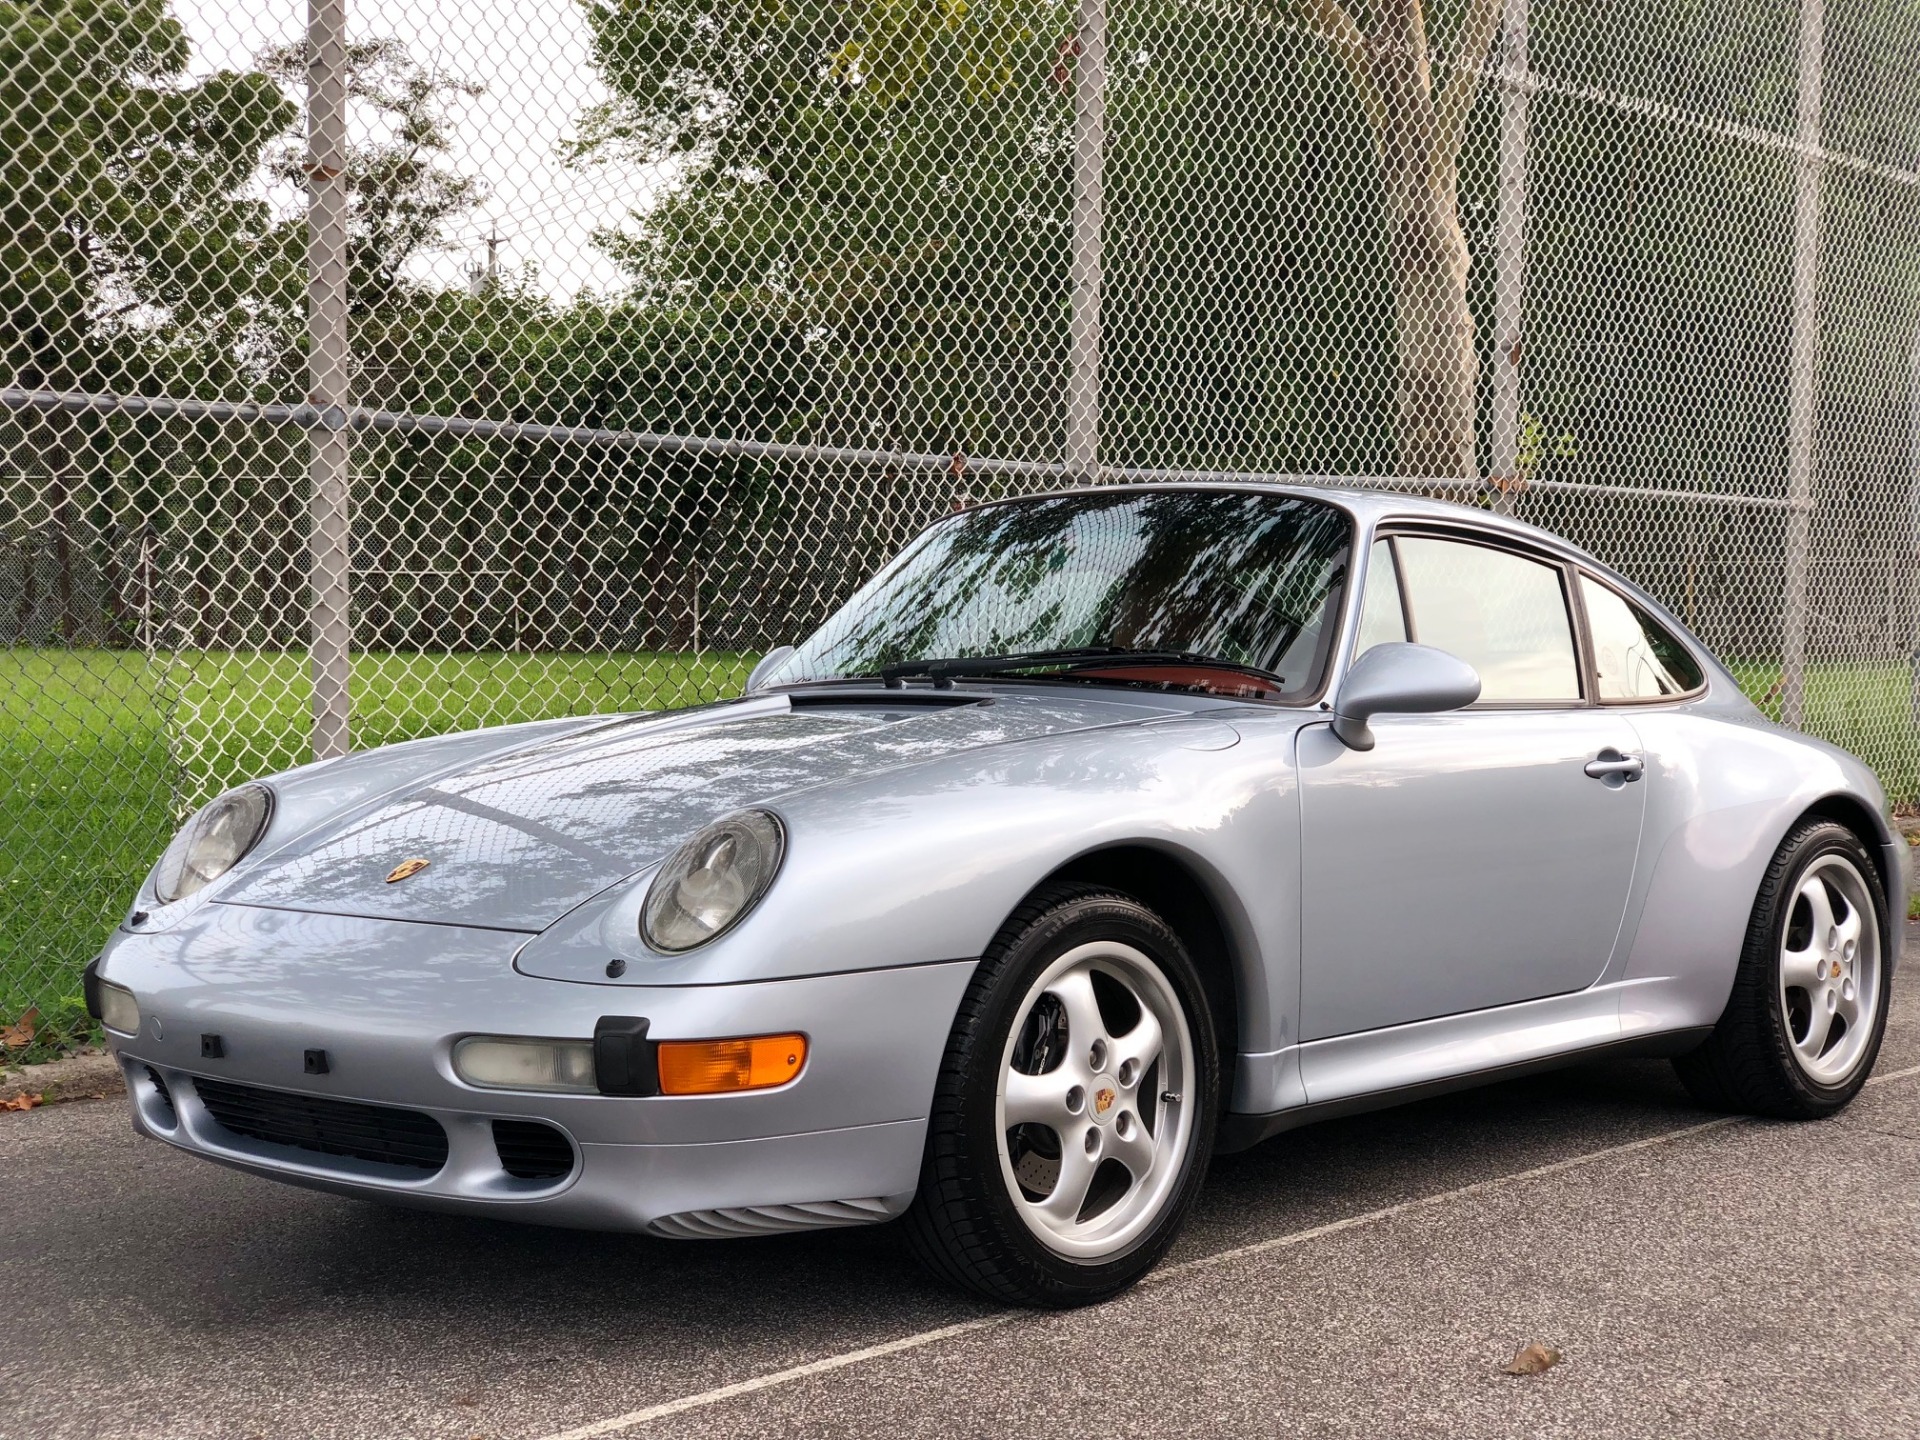 1997 Porsche 911 Carrera S Stock # 2543 for sale near North Miami Beach,  FL. Specialize In Porsches